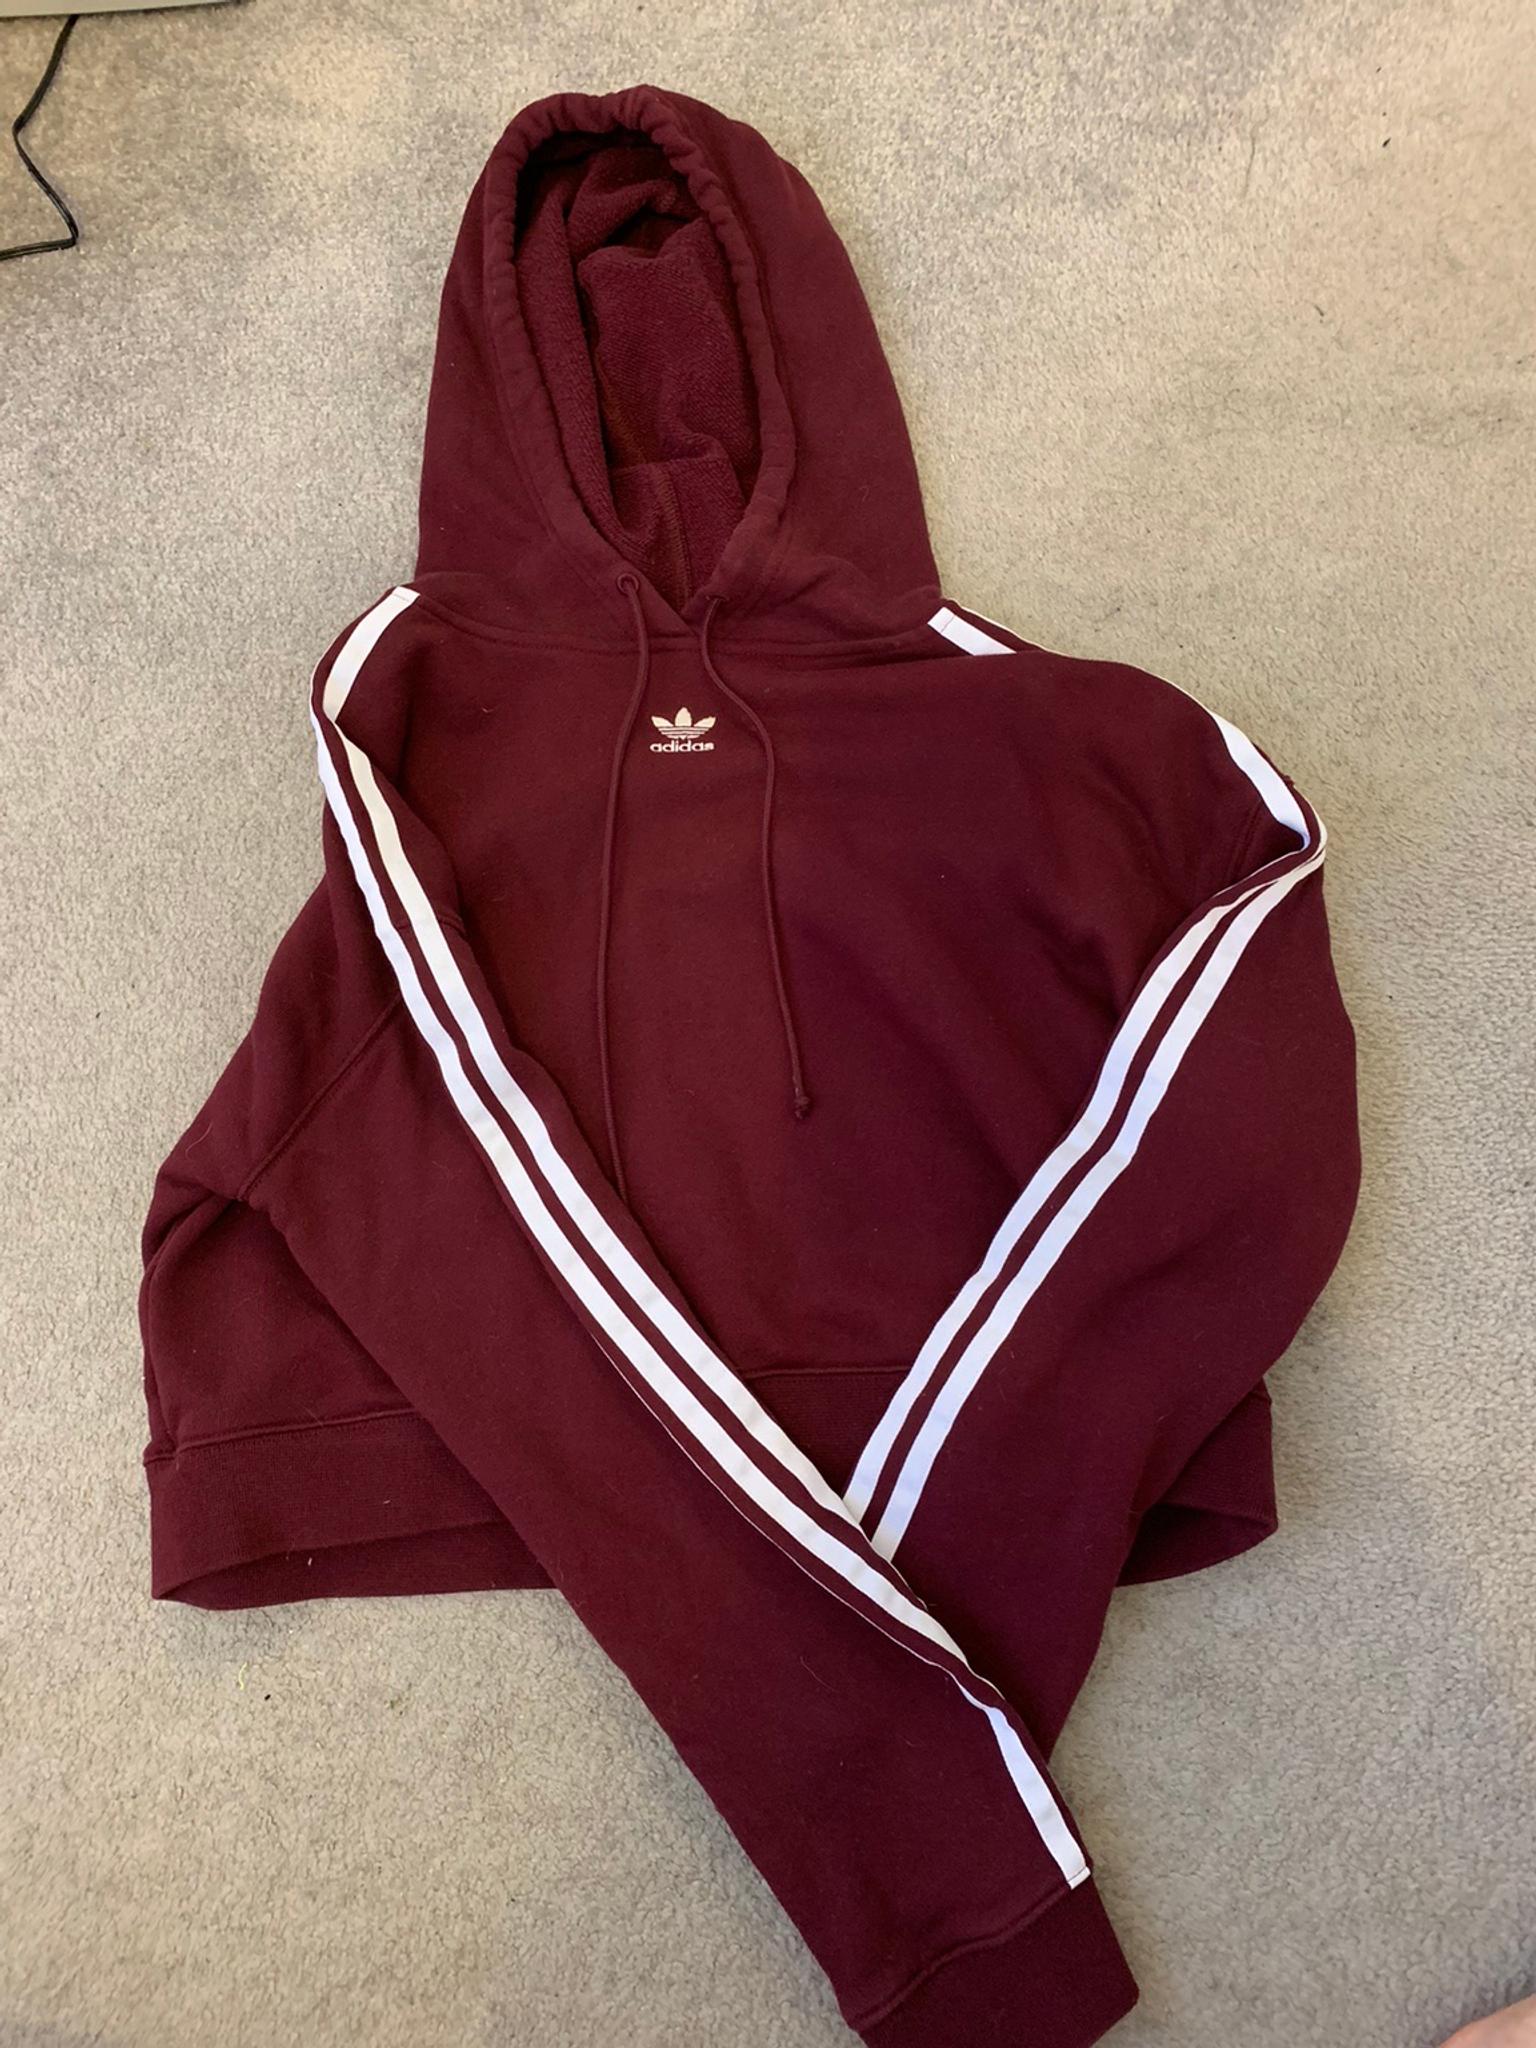 maroon adidas hoodie